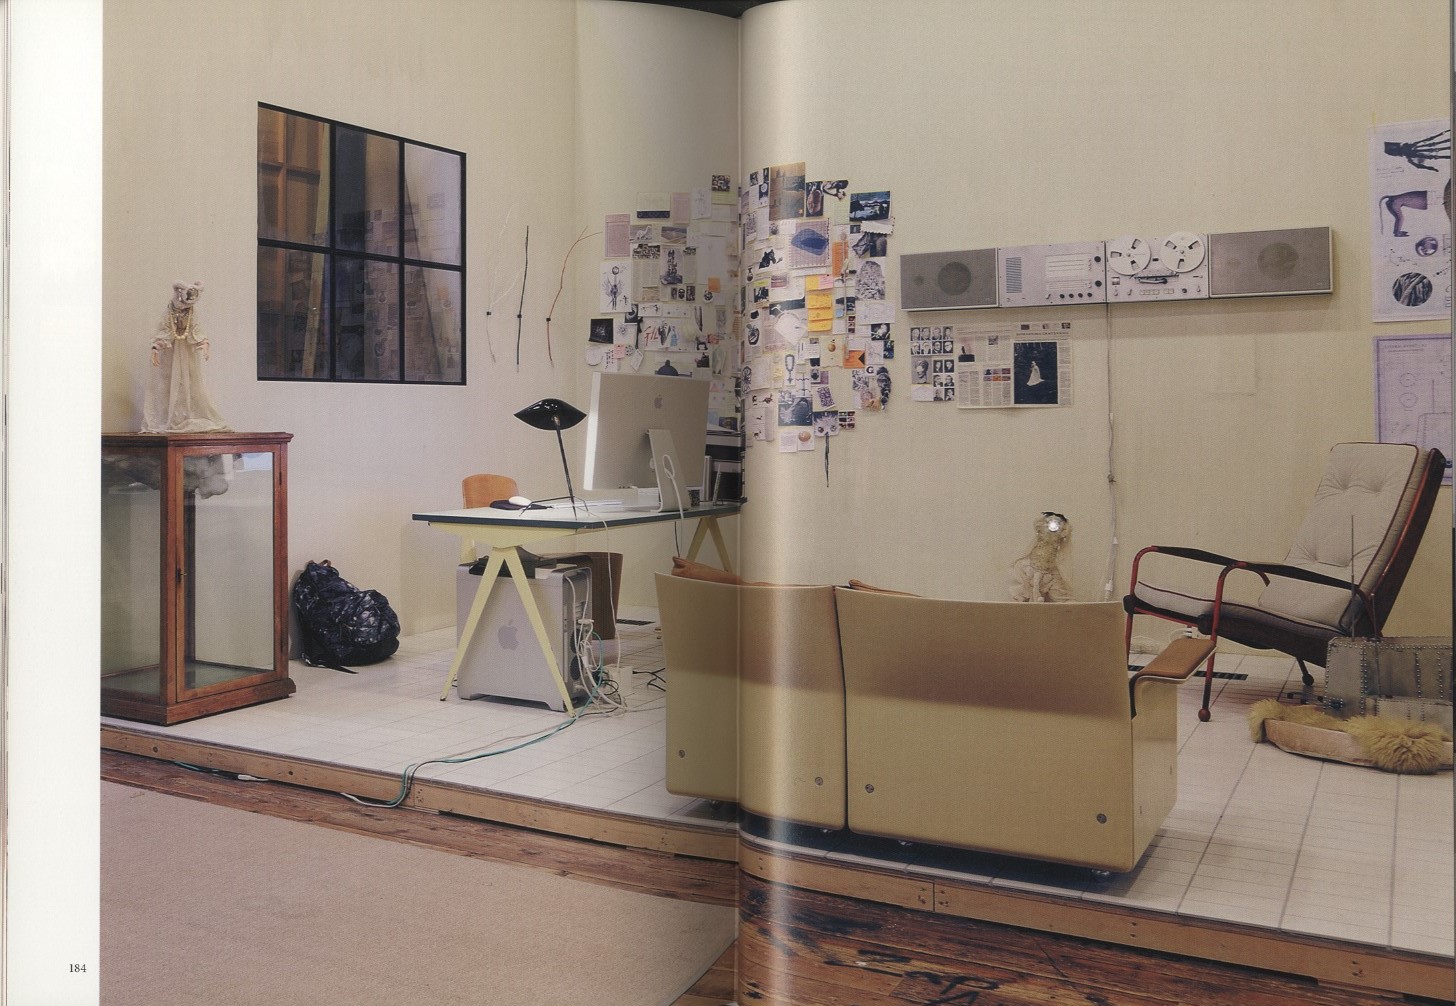 ジャン プルーヴェ 20世紀デザインの巨人 セカンドカバー付 限定